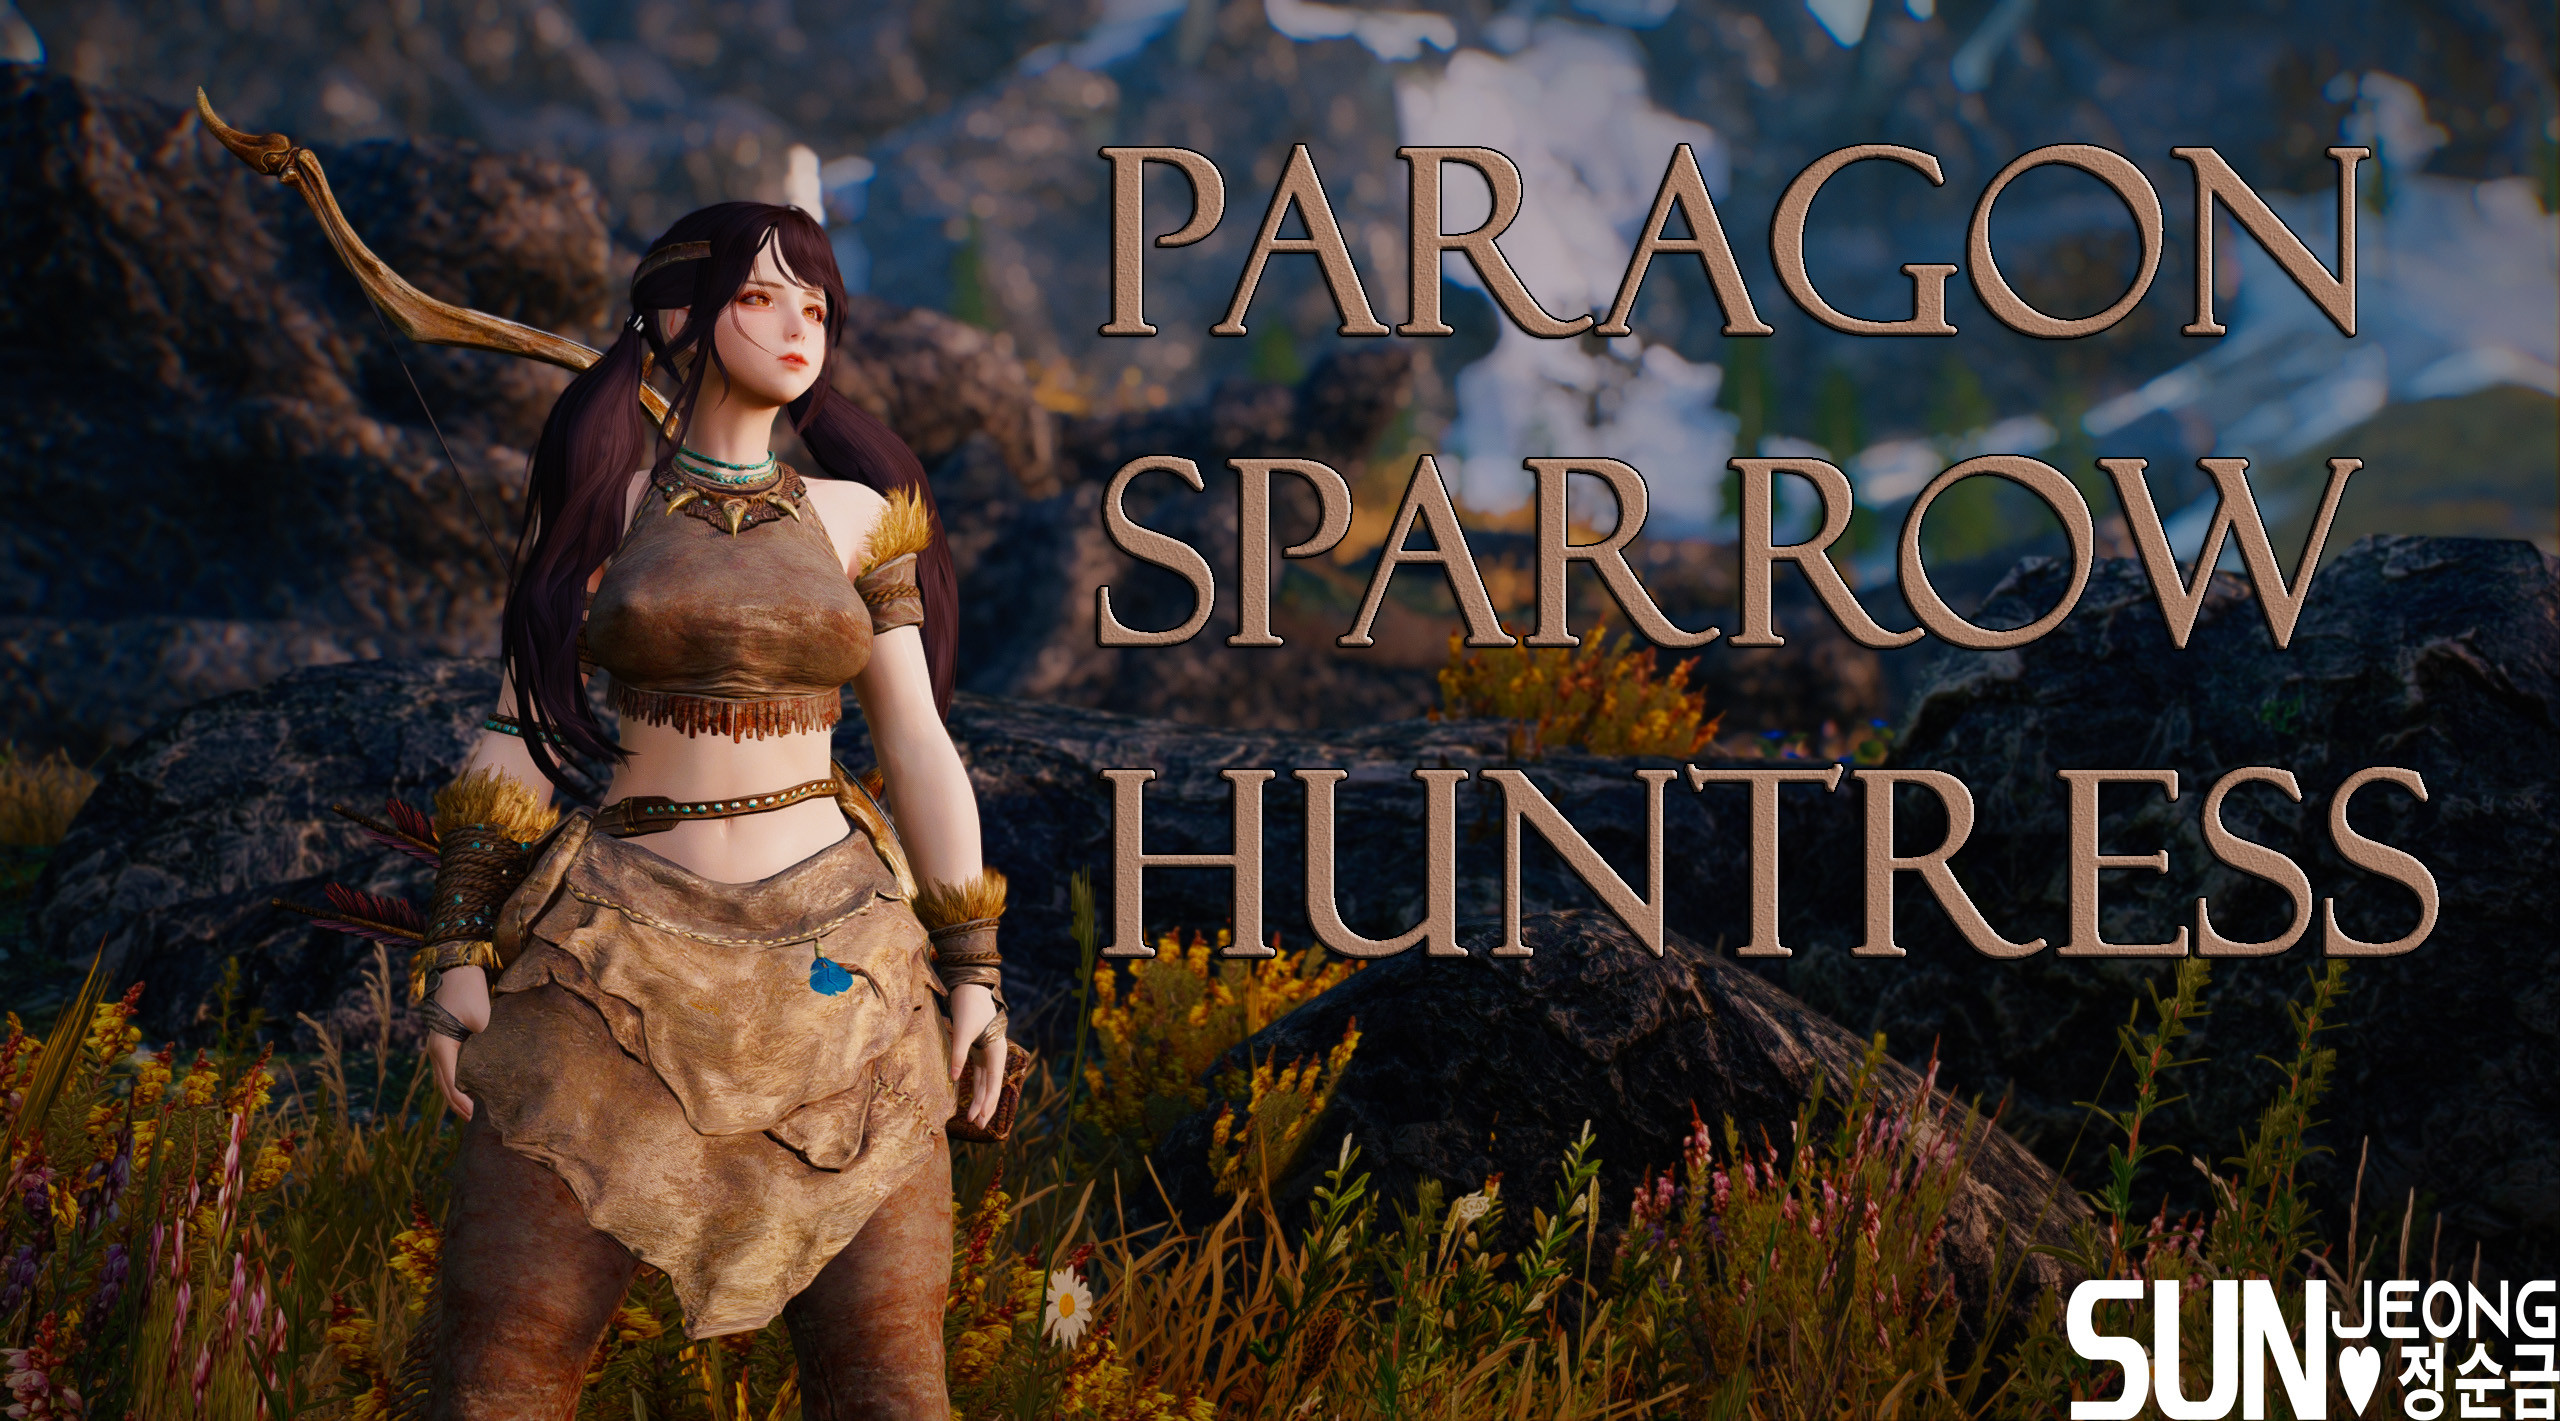 Paragon Sparrow Huntress